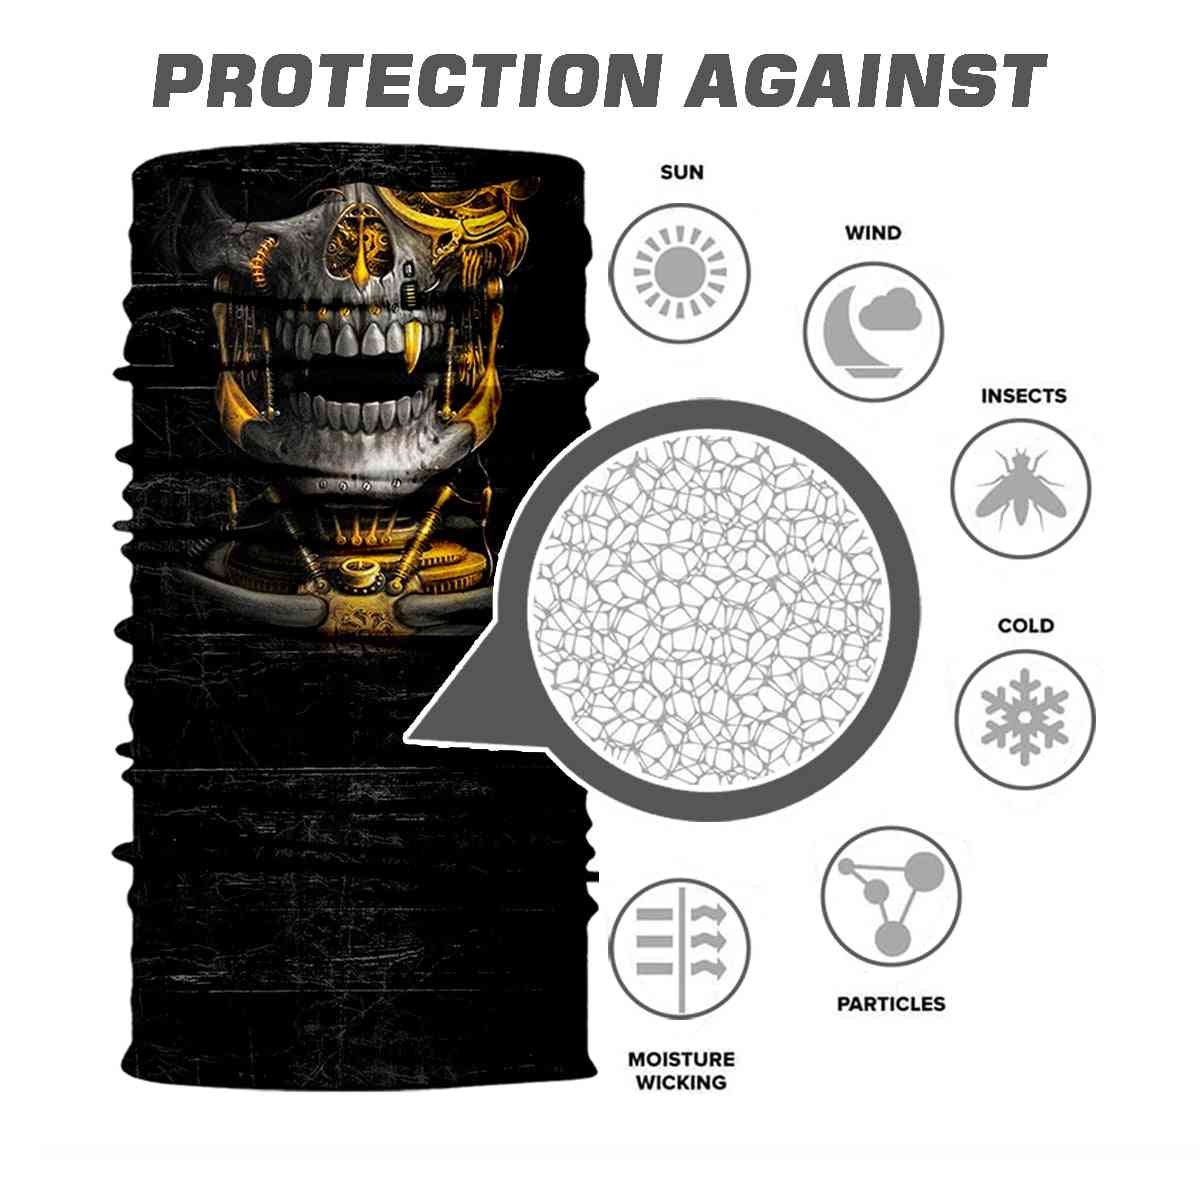 3d- pasamontañas de esqueleto de calavera, máscara de protección facial sin costuras, diadema de bufanda para exteriores